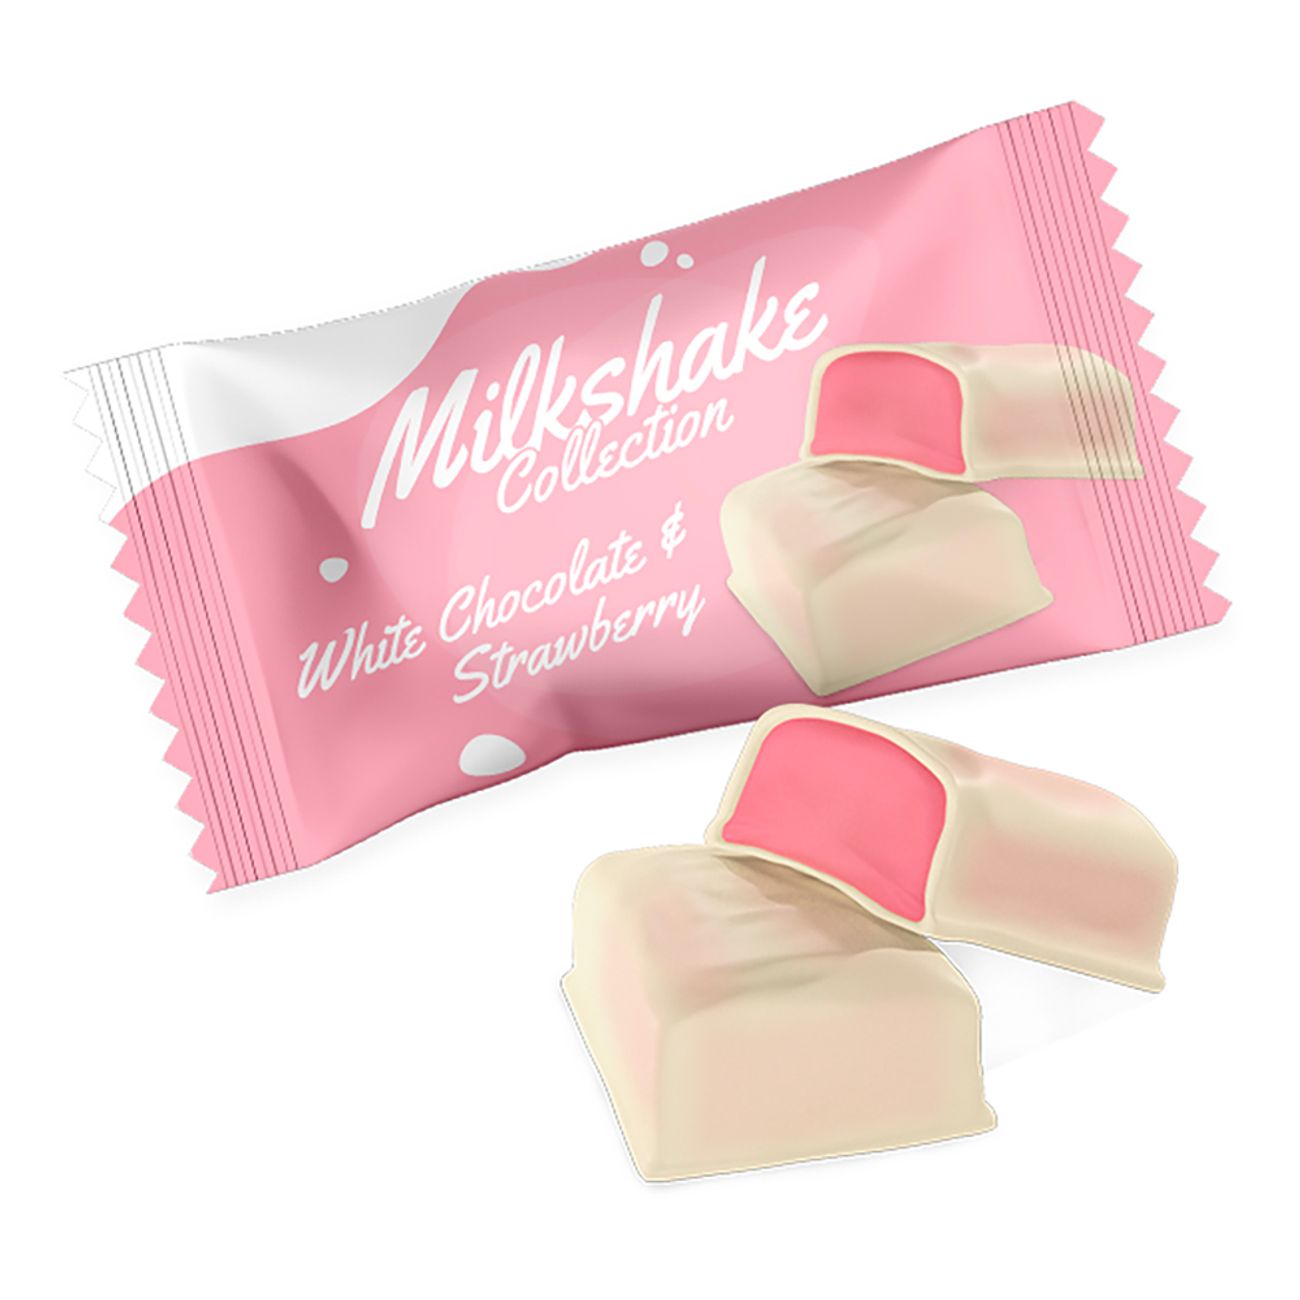 milkshake-white-choco-strawberry-90237-1